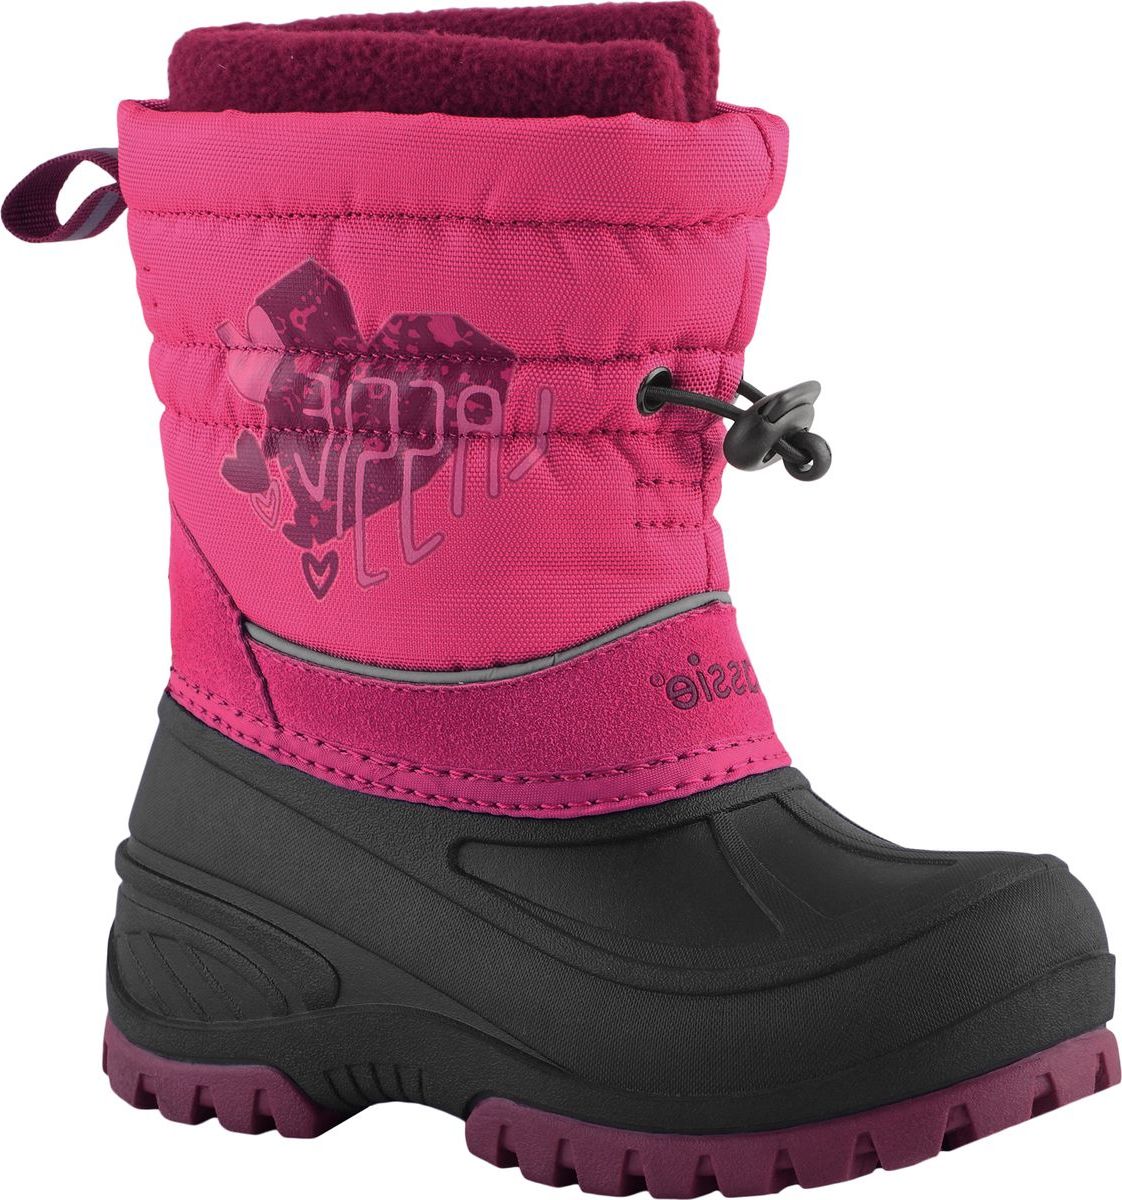 Ботинки детские Lassie Coldwell, цвет: розовый. 7691214690. Размер 25